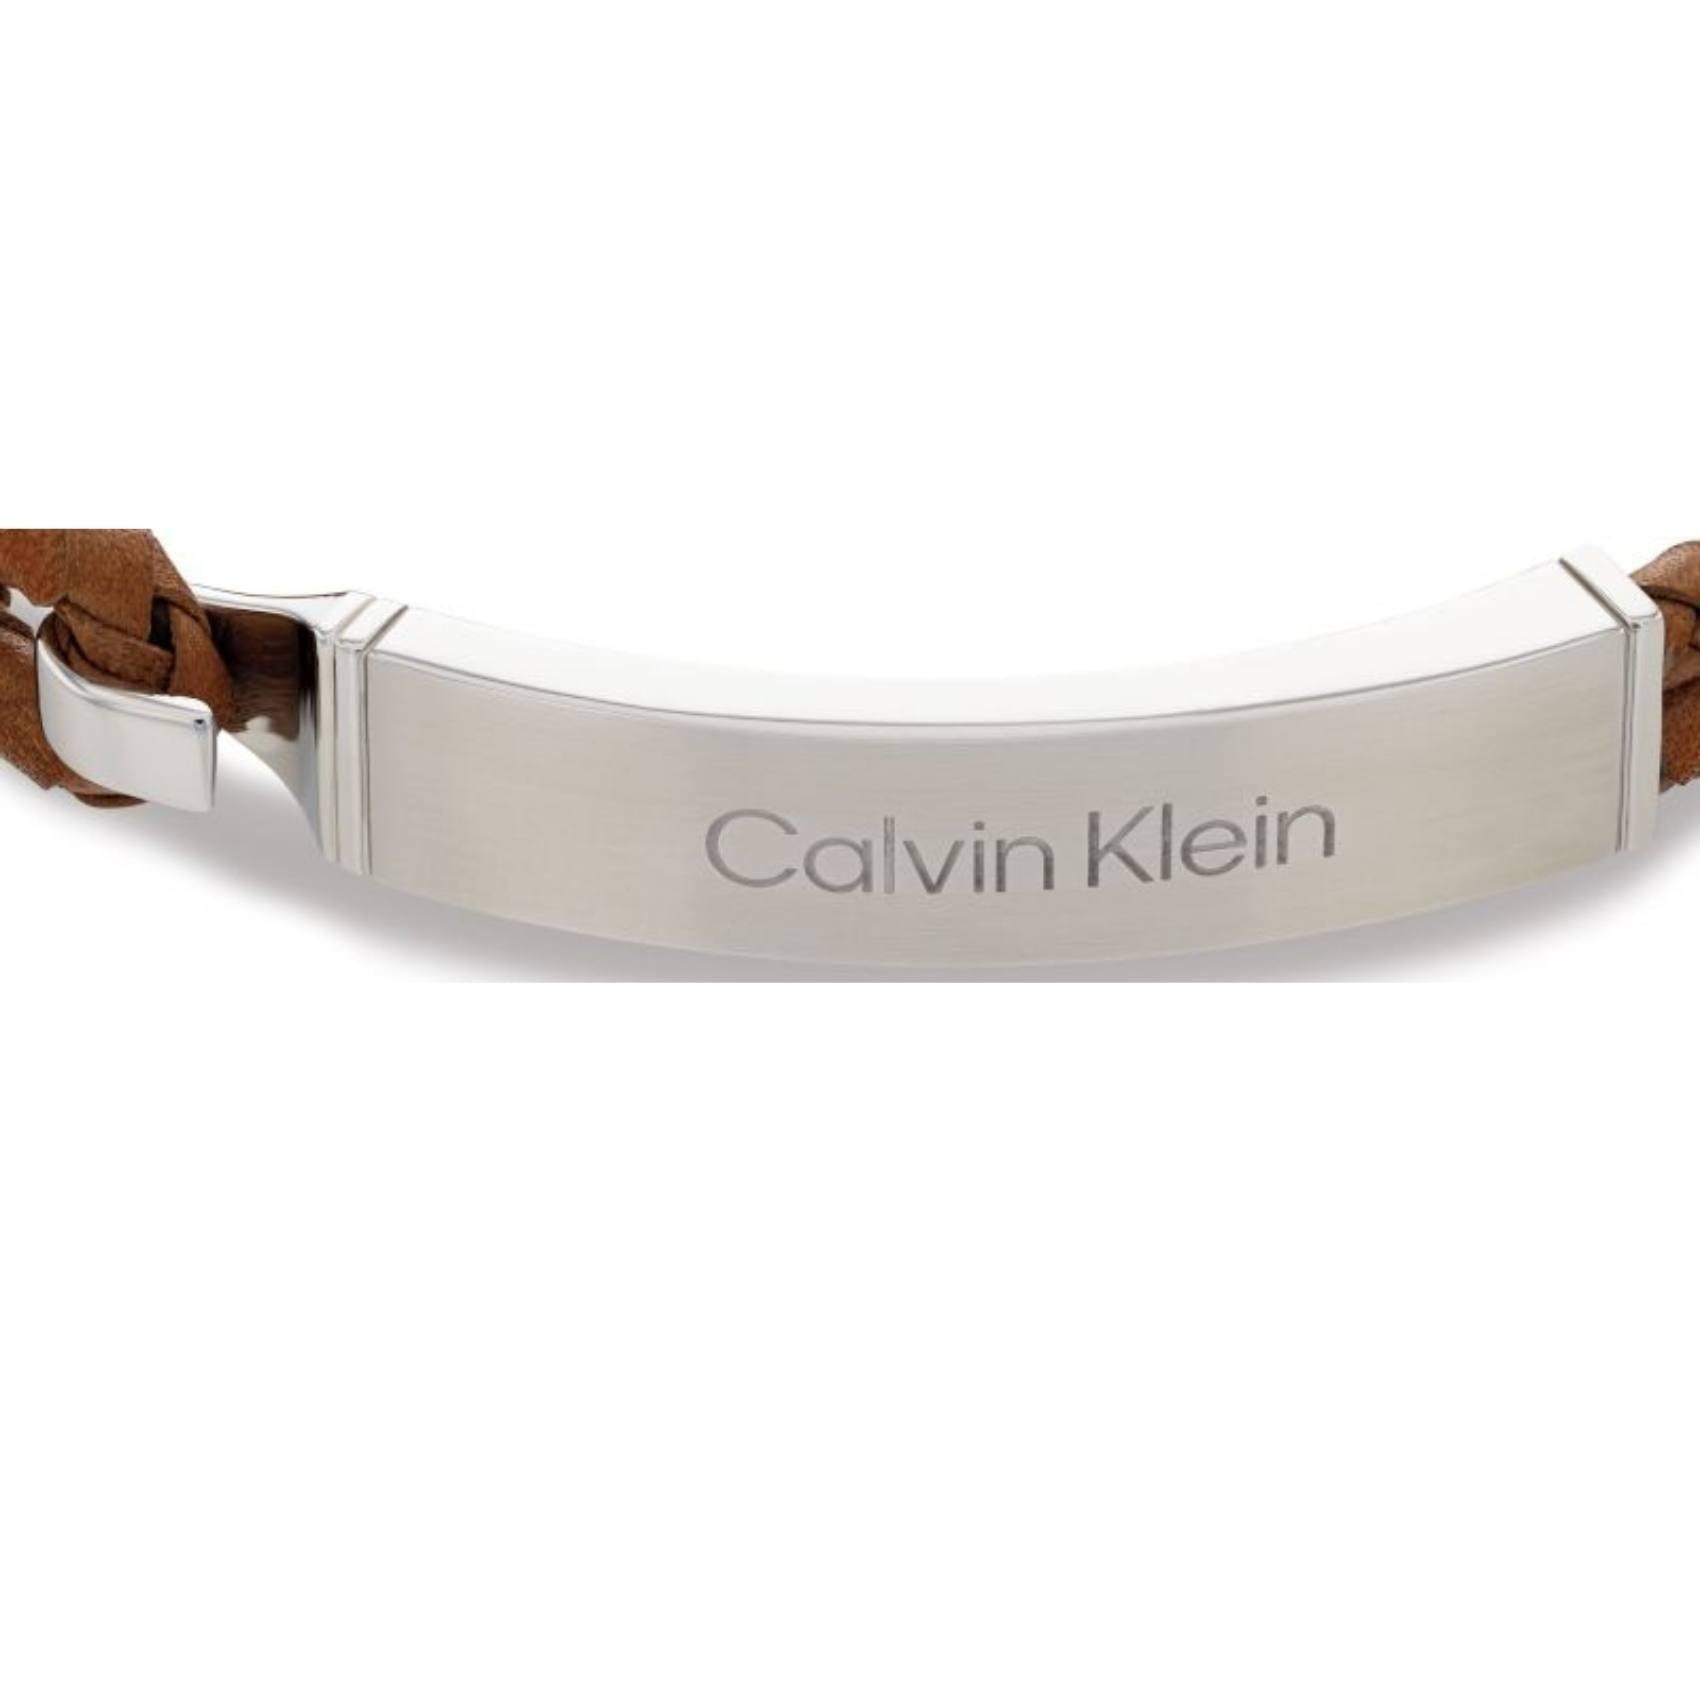 Ανδρικό βραχιόλι Calvin Klein 35000405 από καφέ δέρμα με ασημί αγκράφα.